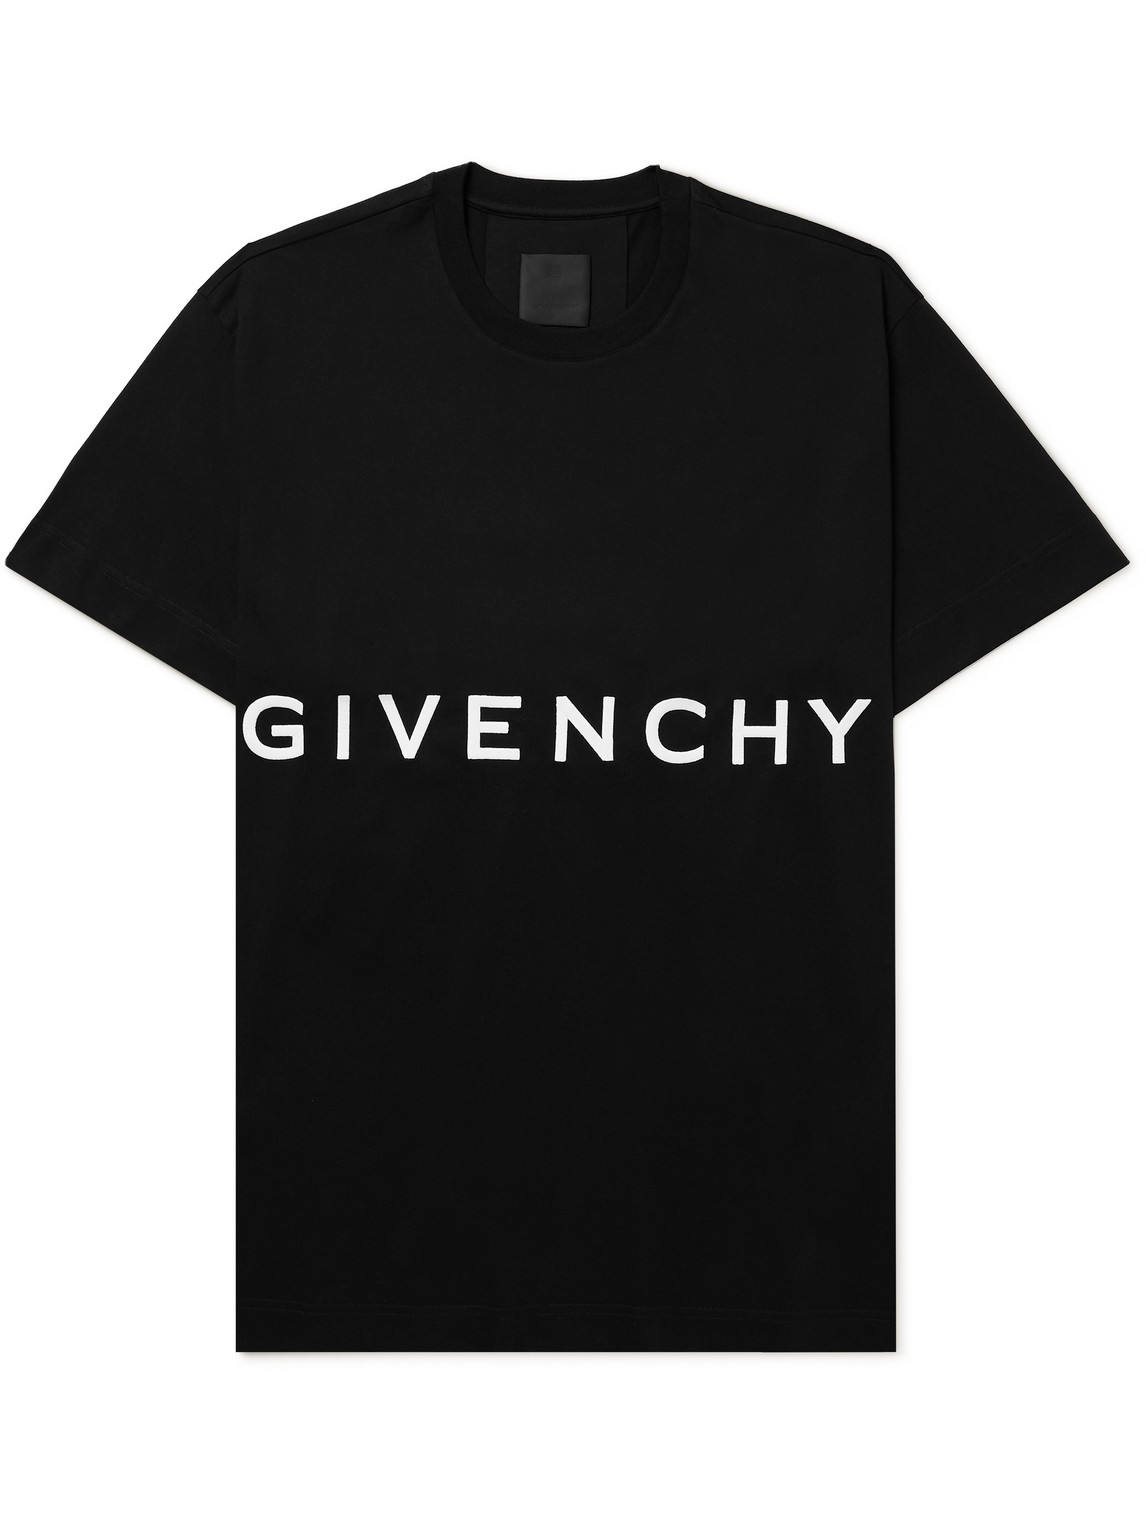 Givenchy - Love Me Printed Cotton-Jersey T-Shirt - Men - Black - S pour  hommes